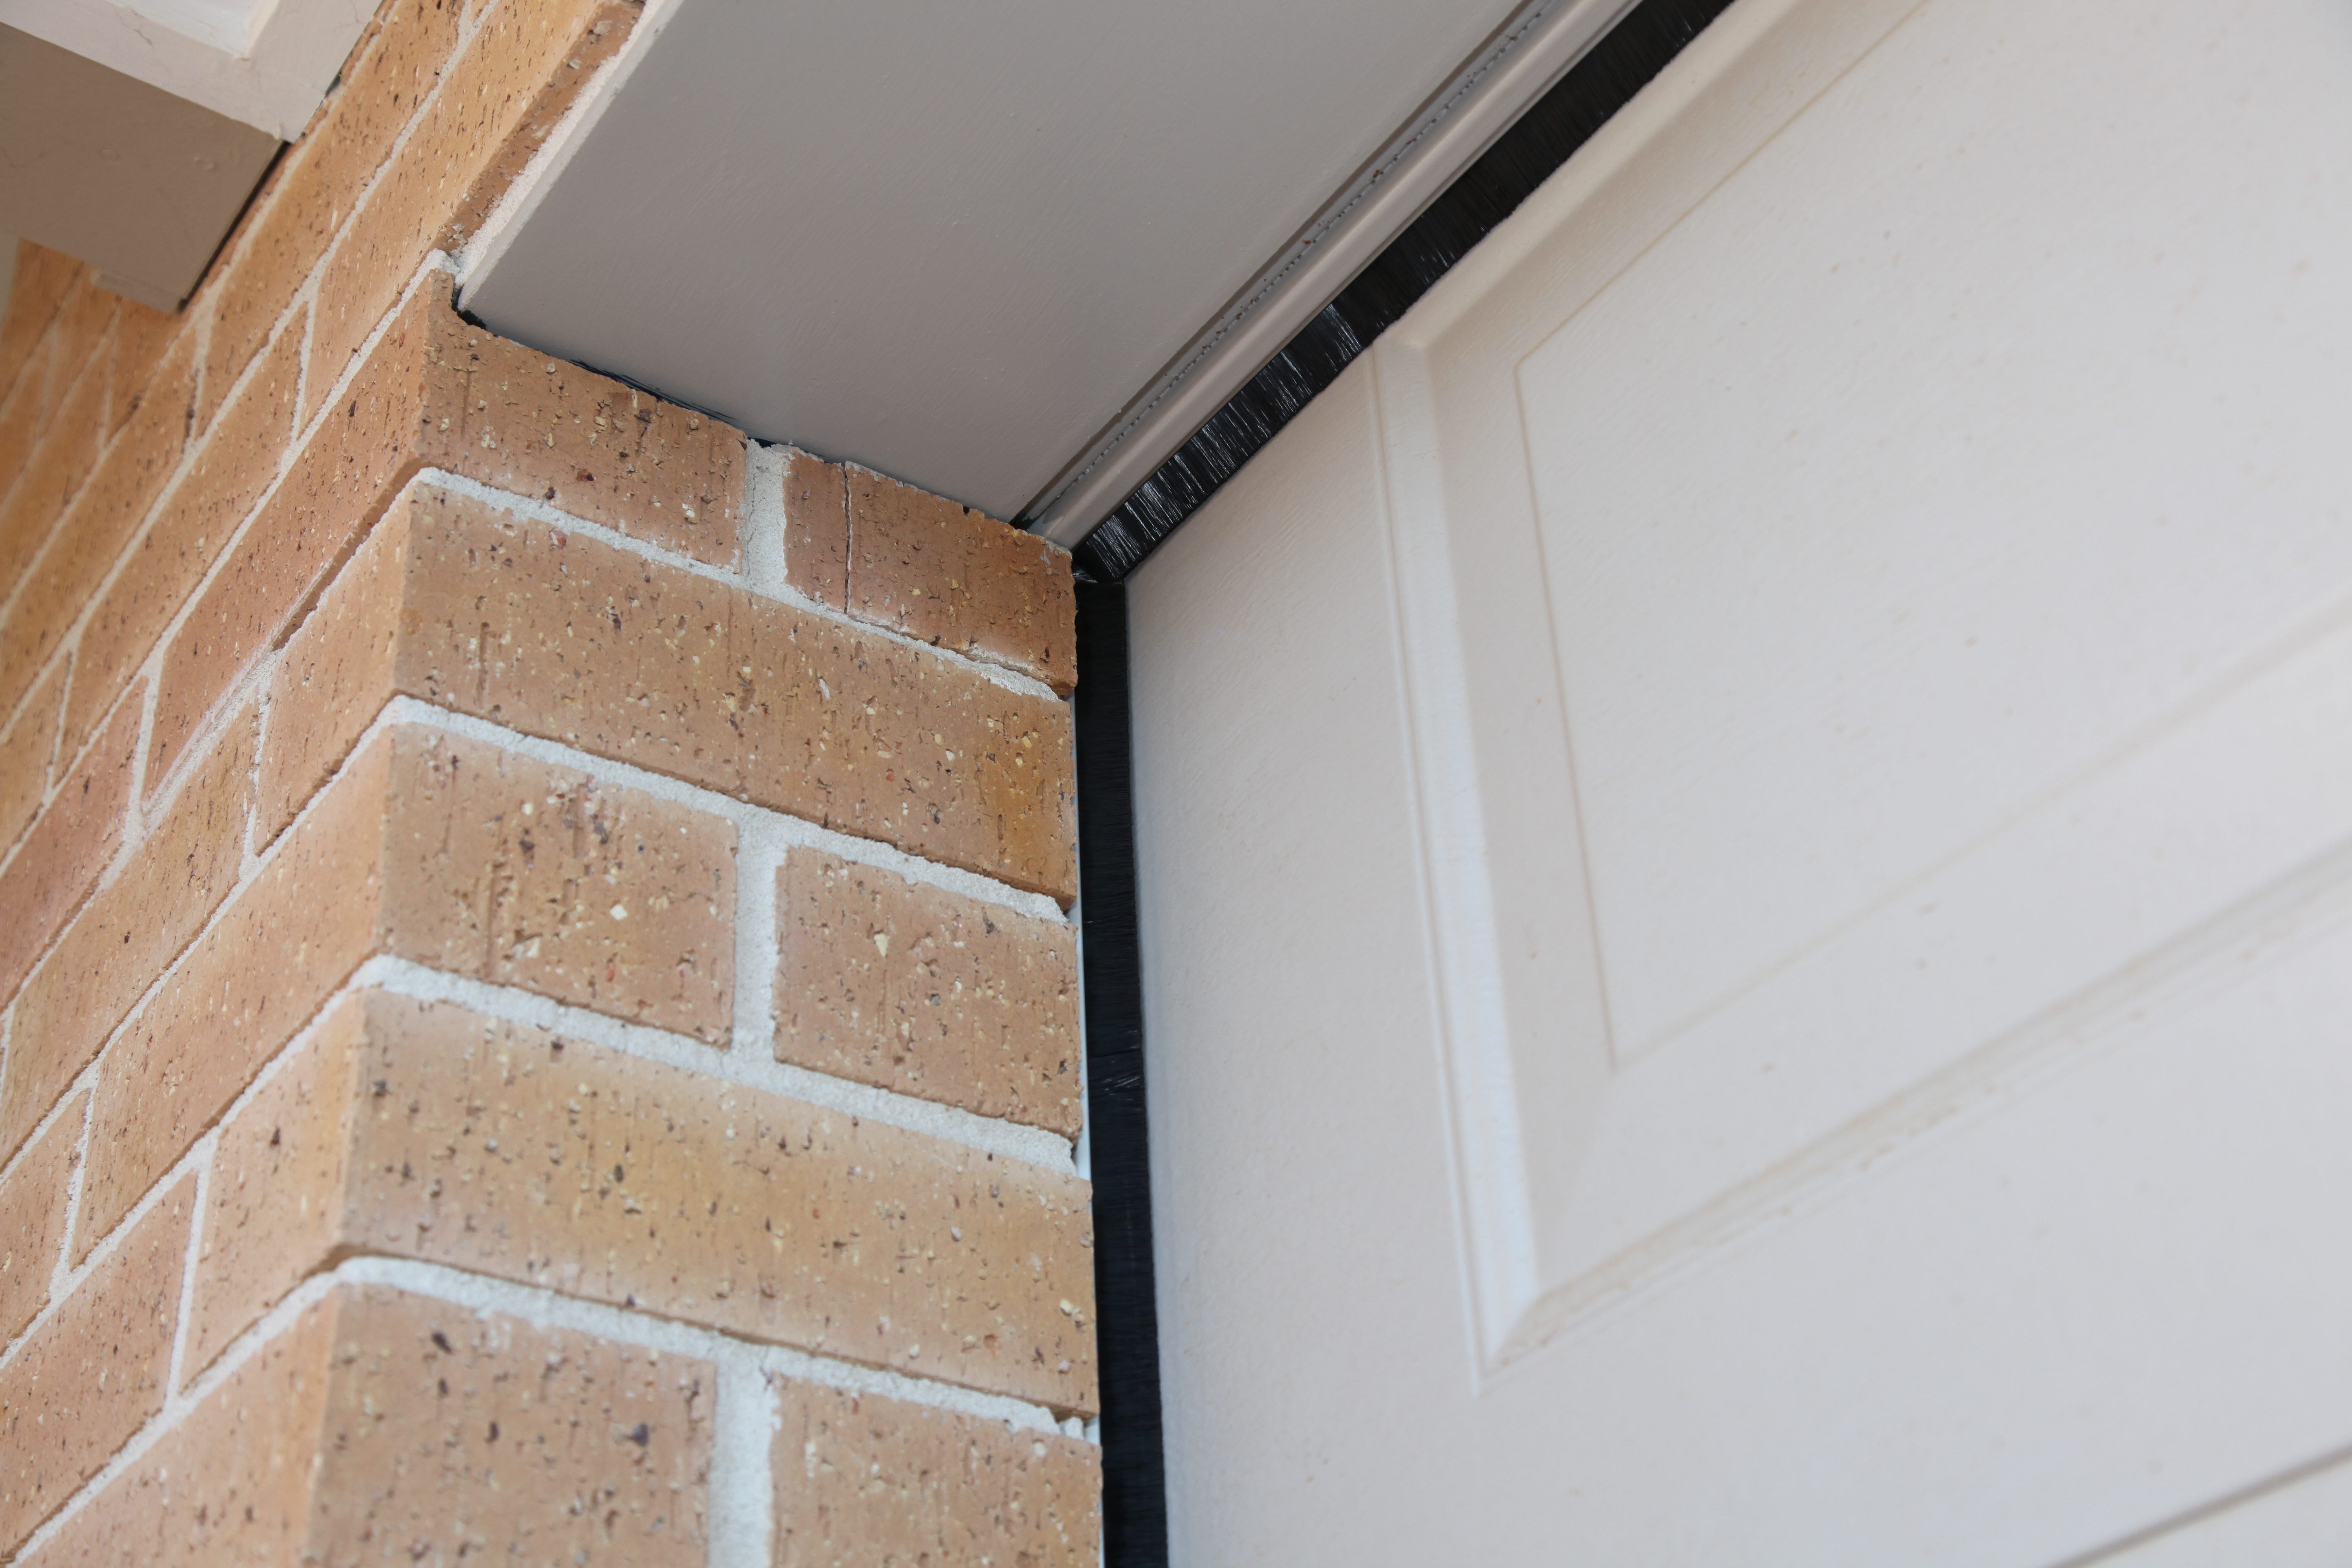 Thermadoor Door Seals, How To Seal A Sectional Garage Door